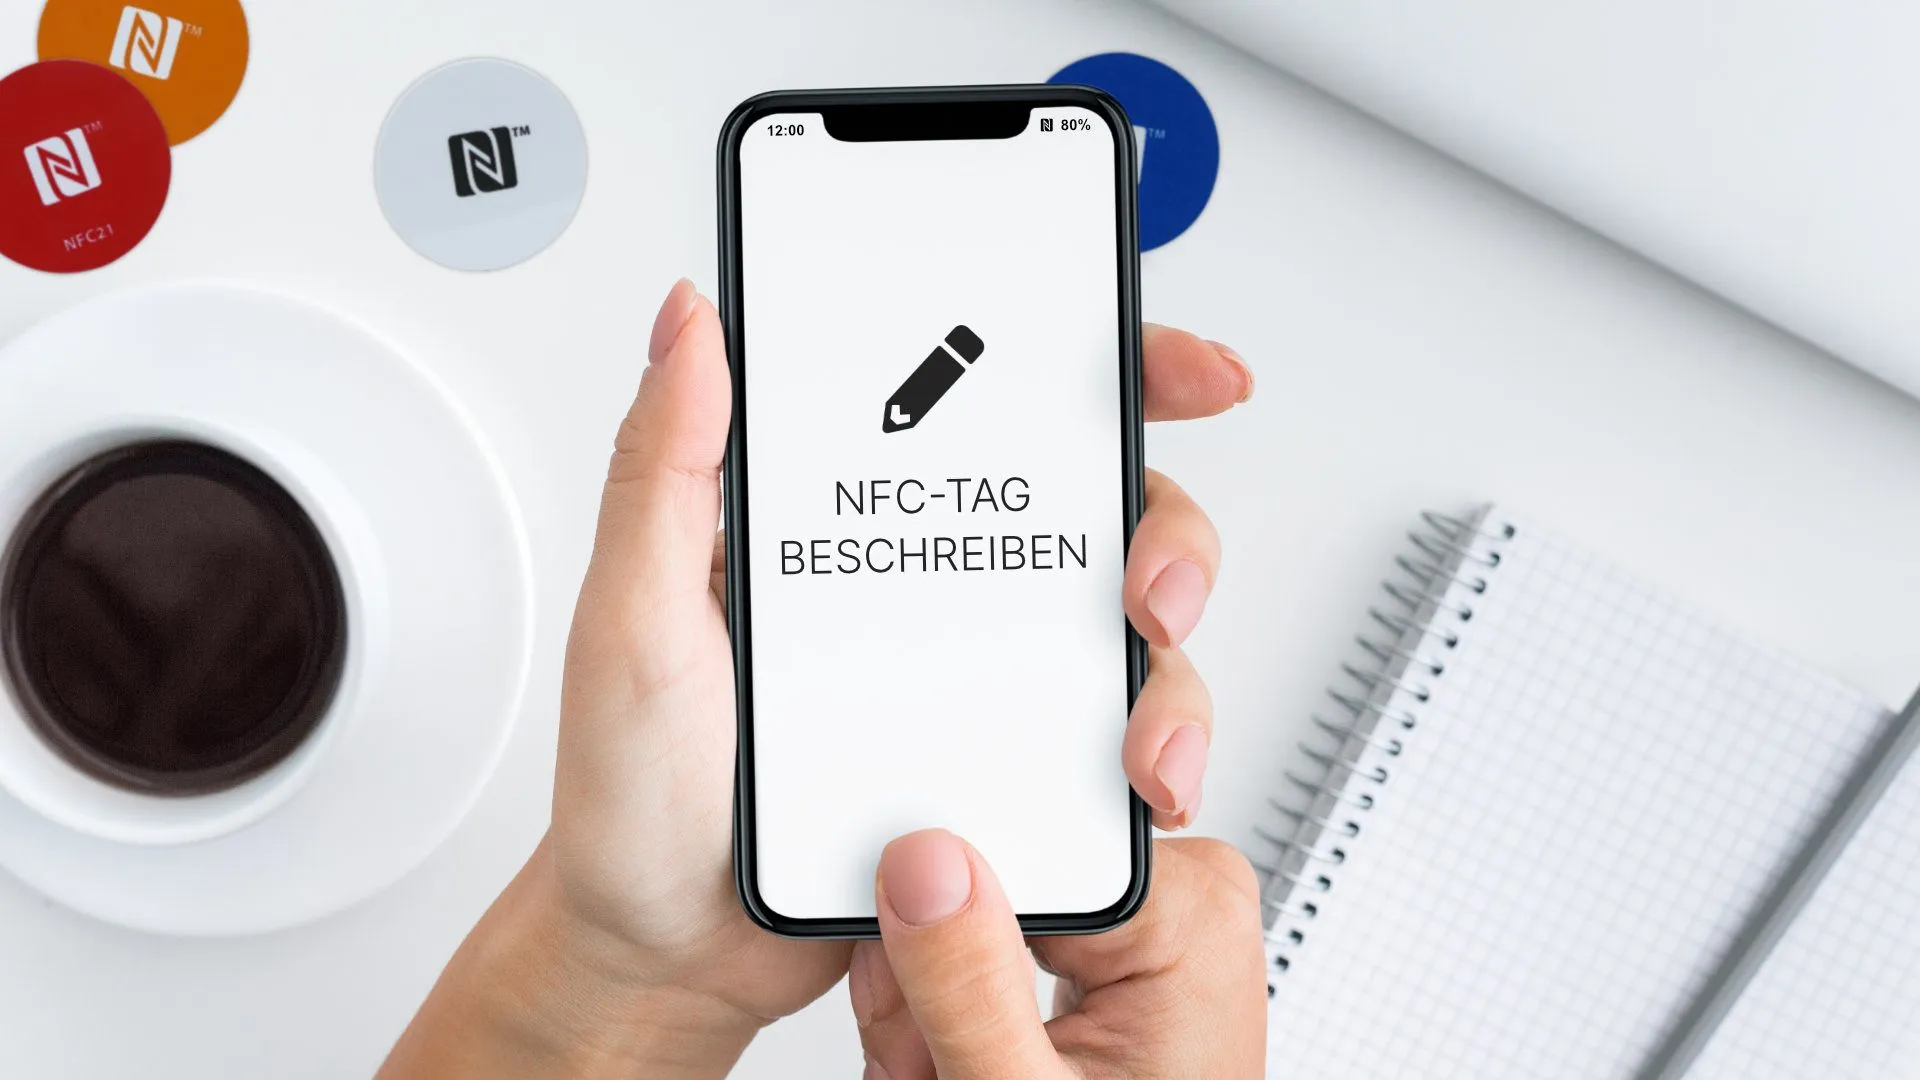 Android: NFC-Tags beschreiben